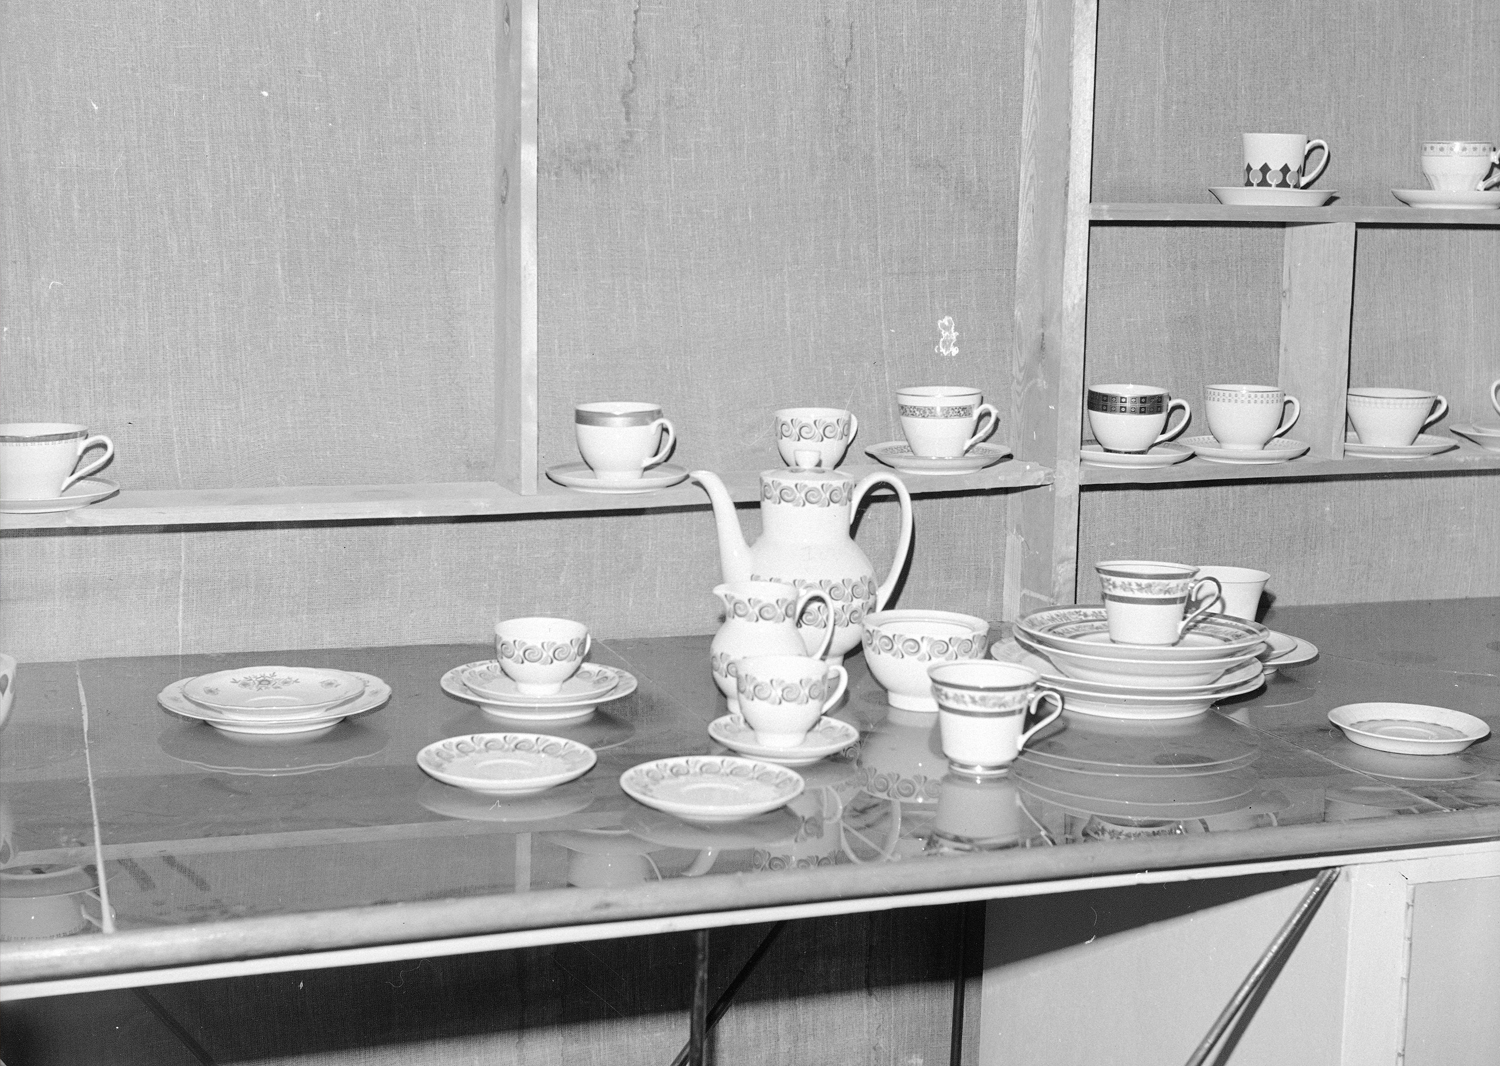 Wyprodukowane naczynia z Fabryki Porcelany w Ćmielowie, 1975, źródło: Narodowe Archiwum Cyfrowe.